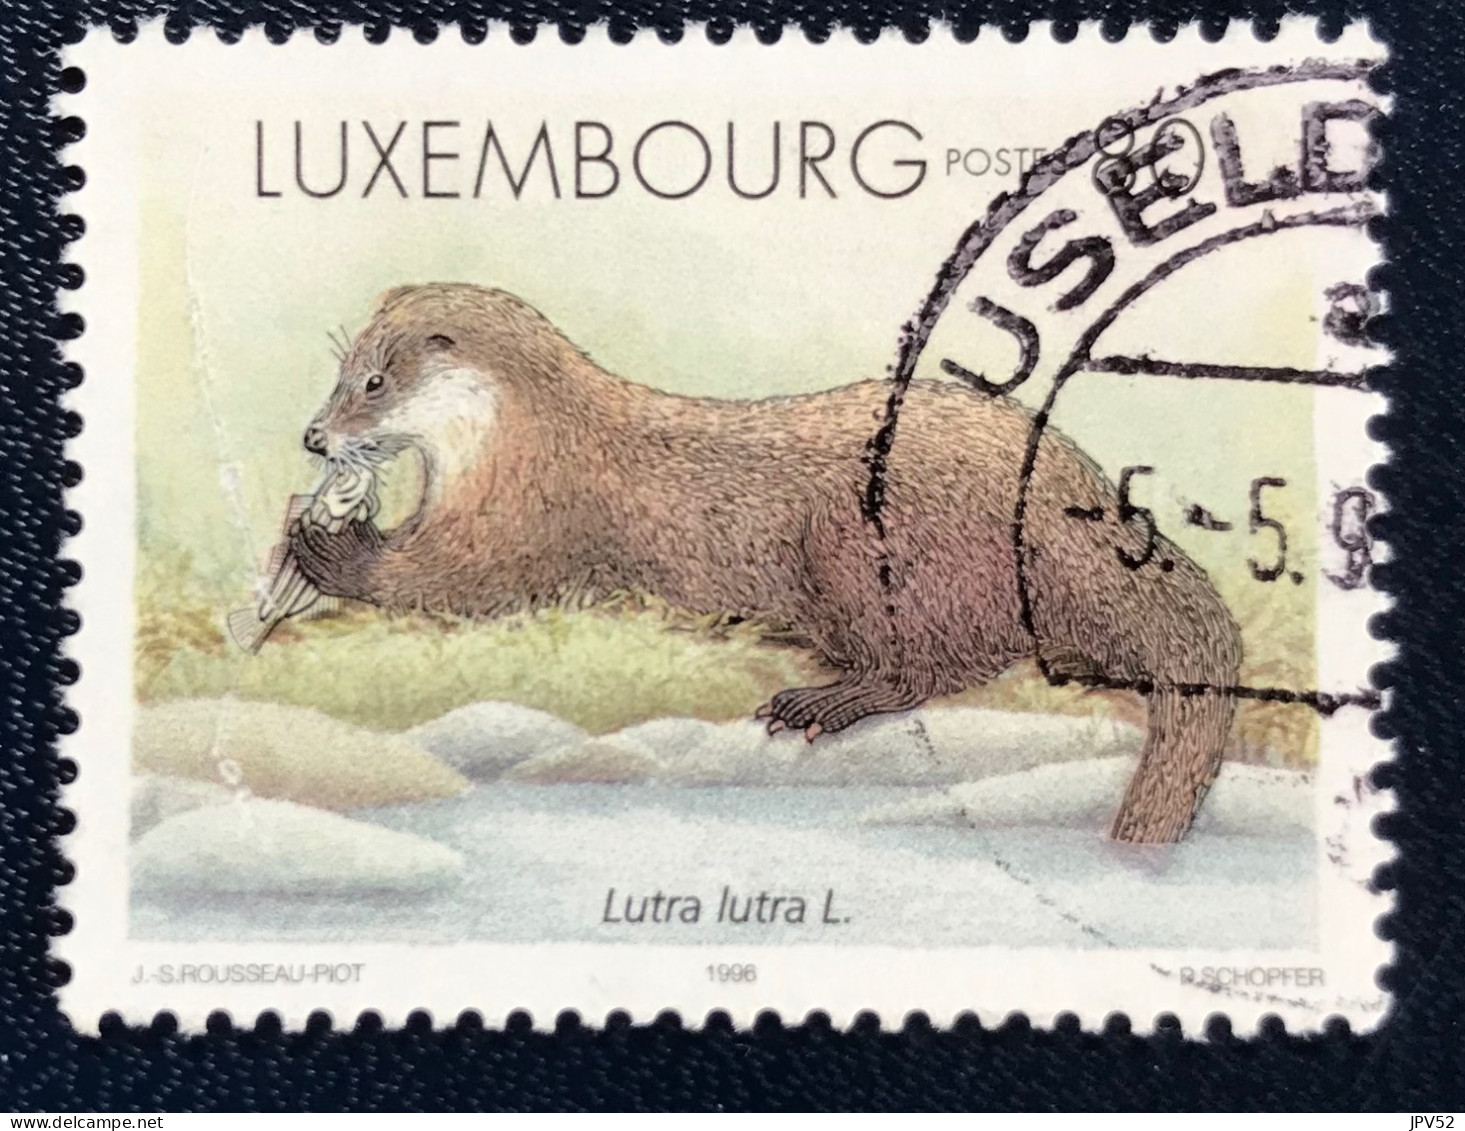 Luxembourg - Luxemburg - C18/32 - 1996 - (°)used - Michel 1402 - Pelsdieren - Oblitérés